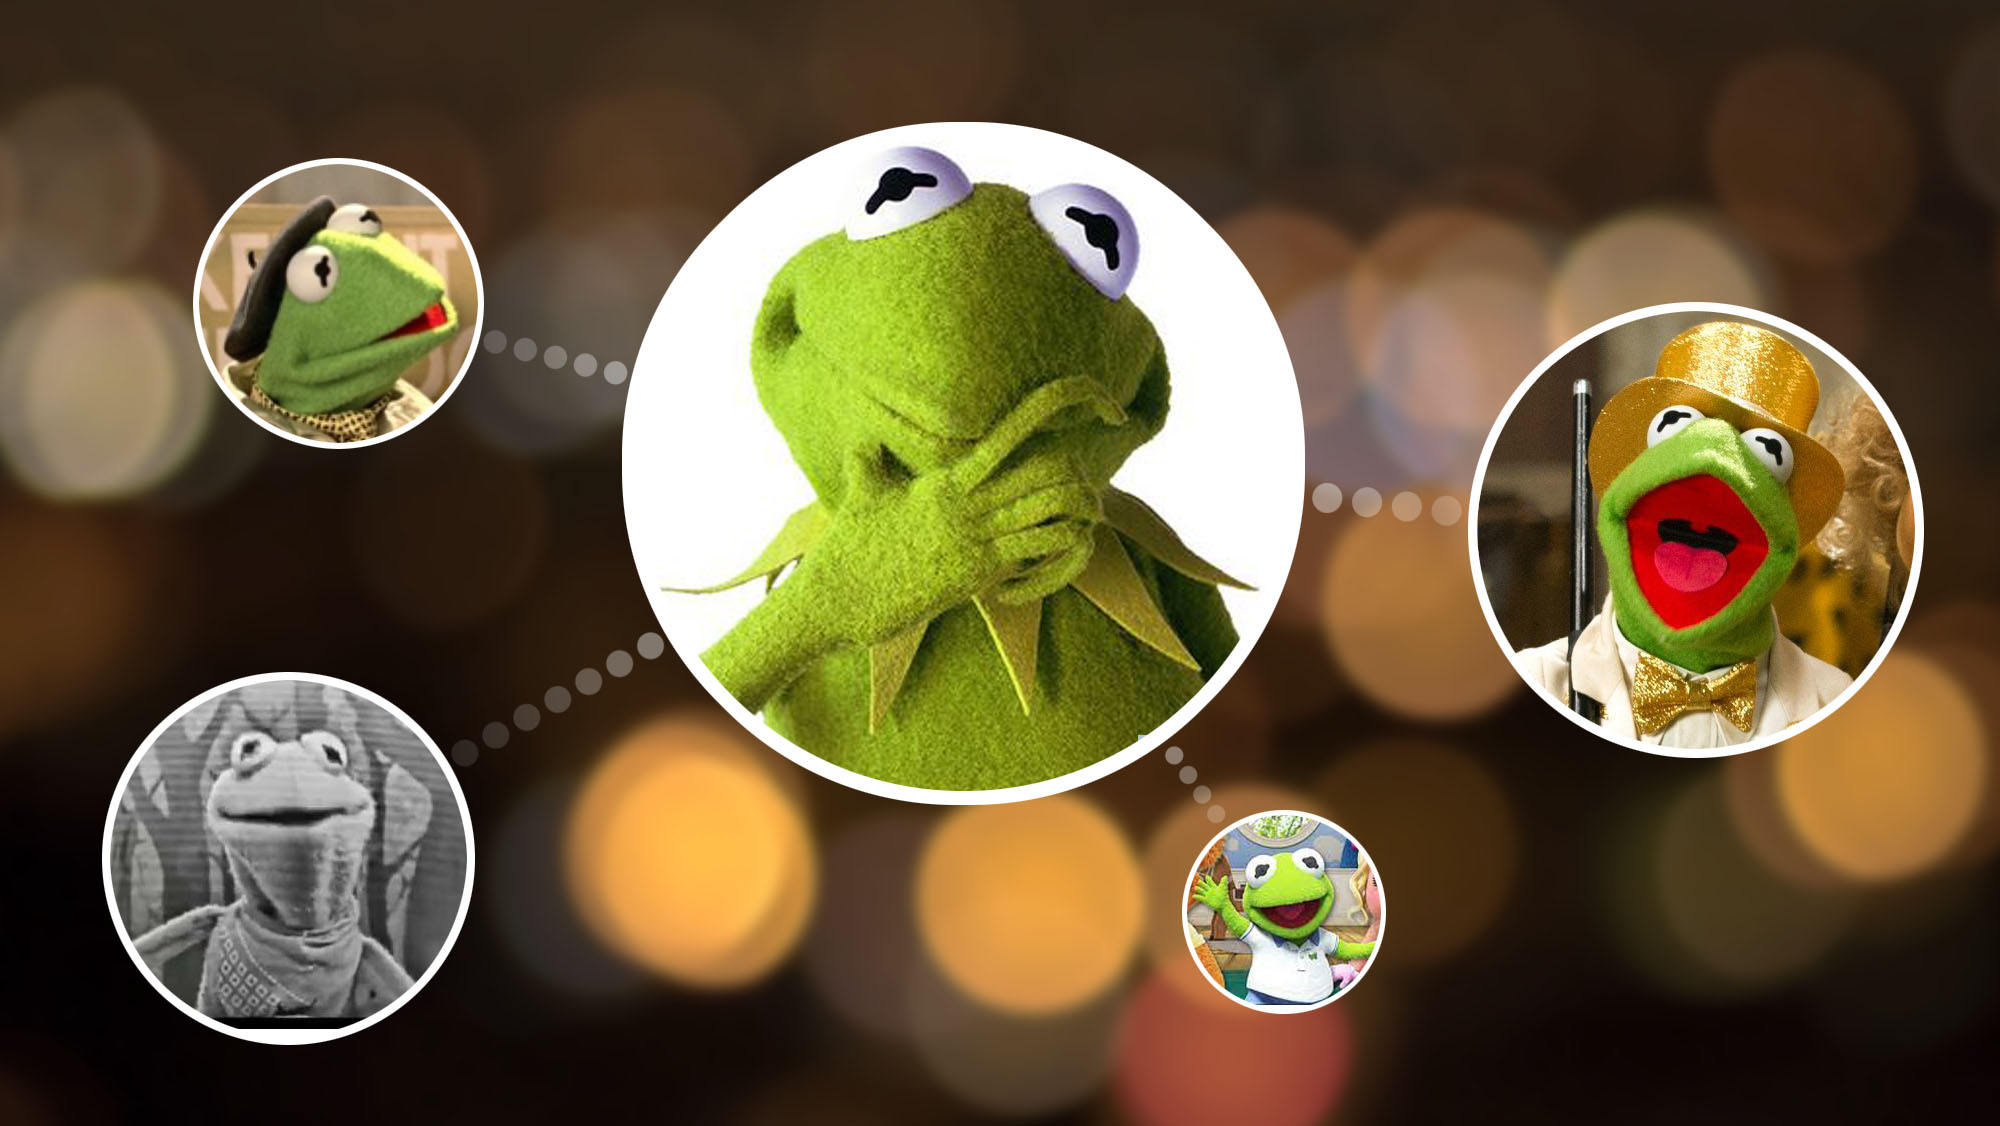 In weiteren Rollen: In welchen Serien hat Kermit der Frosch mitgespielt?